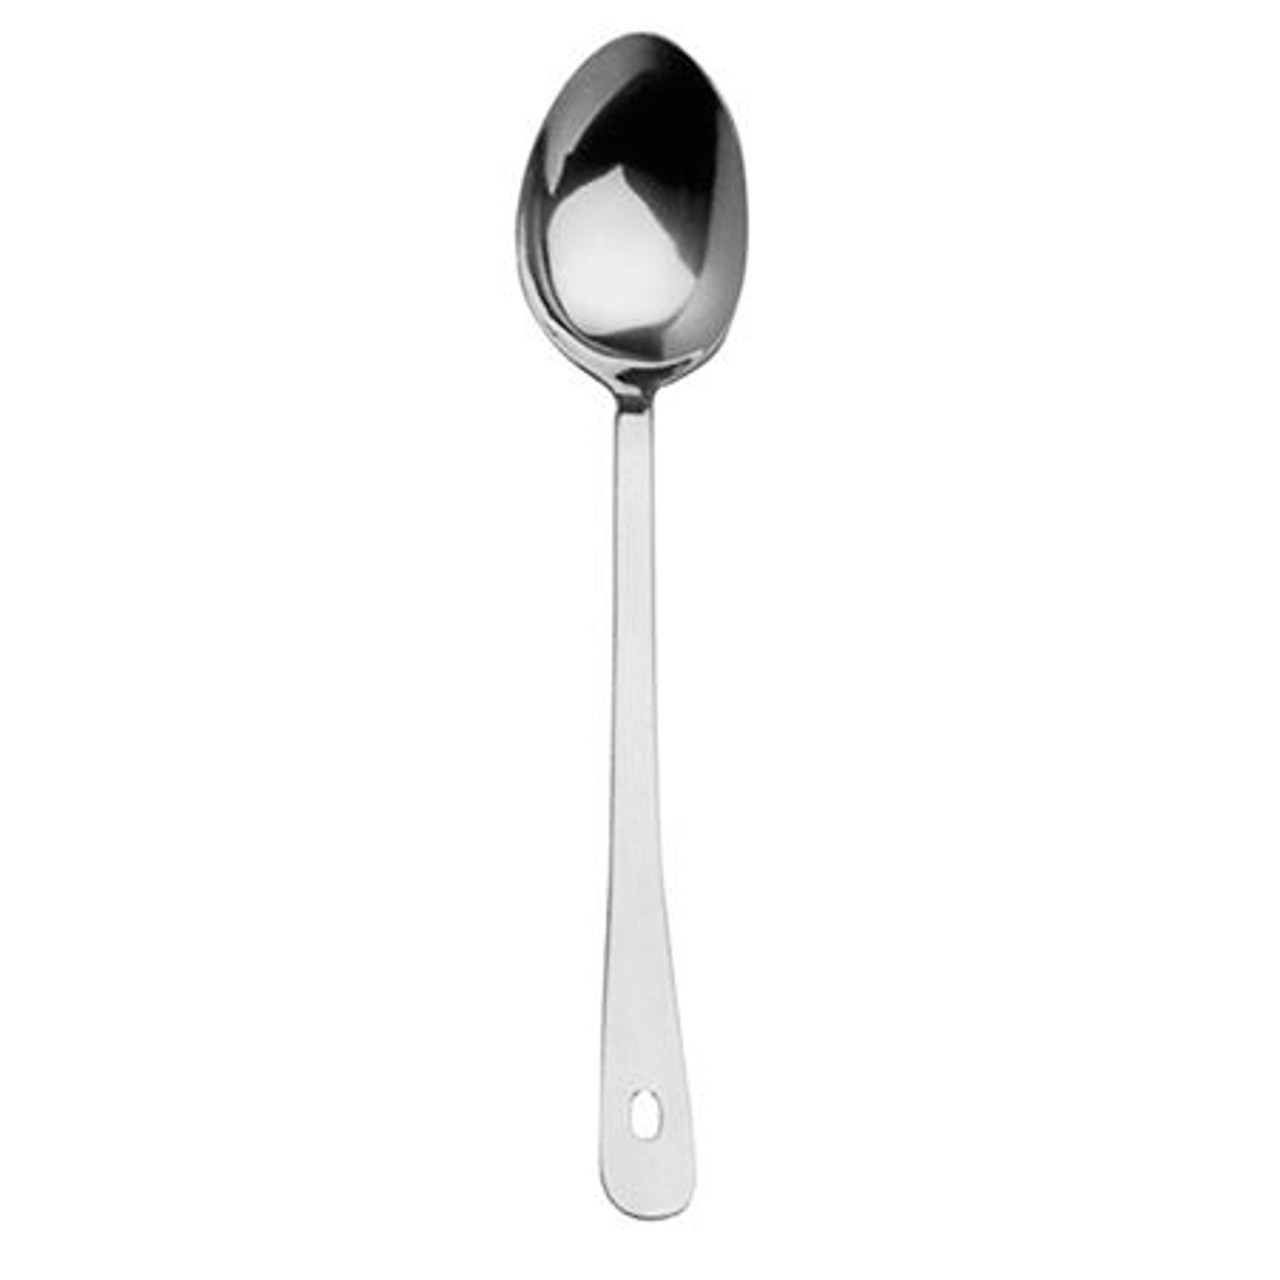 Serving Spoon 40cm / 16" (Pk12)